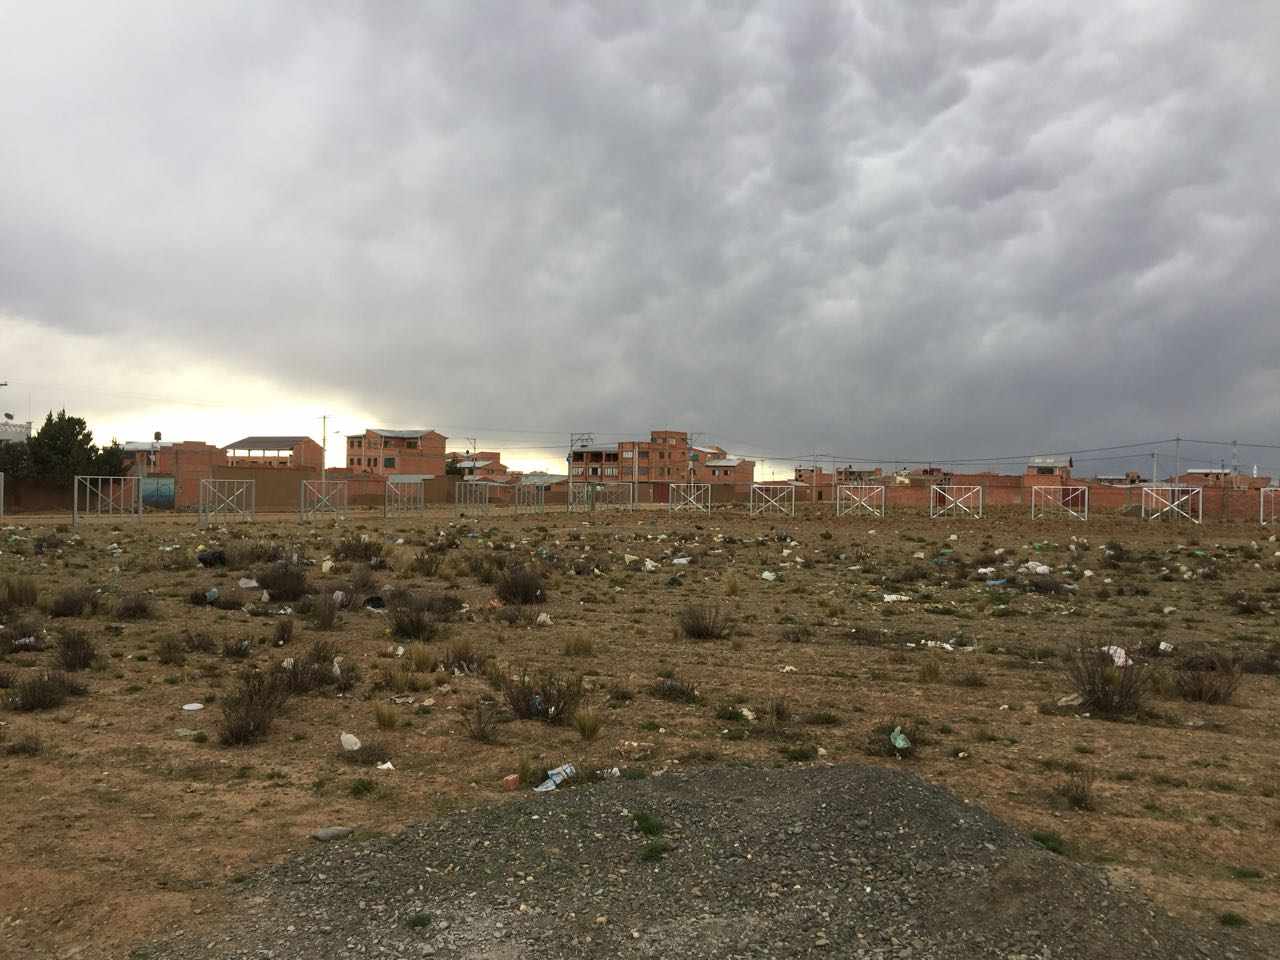 Terreno en VentaAv. G esq. calle 3.Urbanizacion Inti Raymi, zona Tilata distrito 7, camino a Viacha    Foto 4